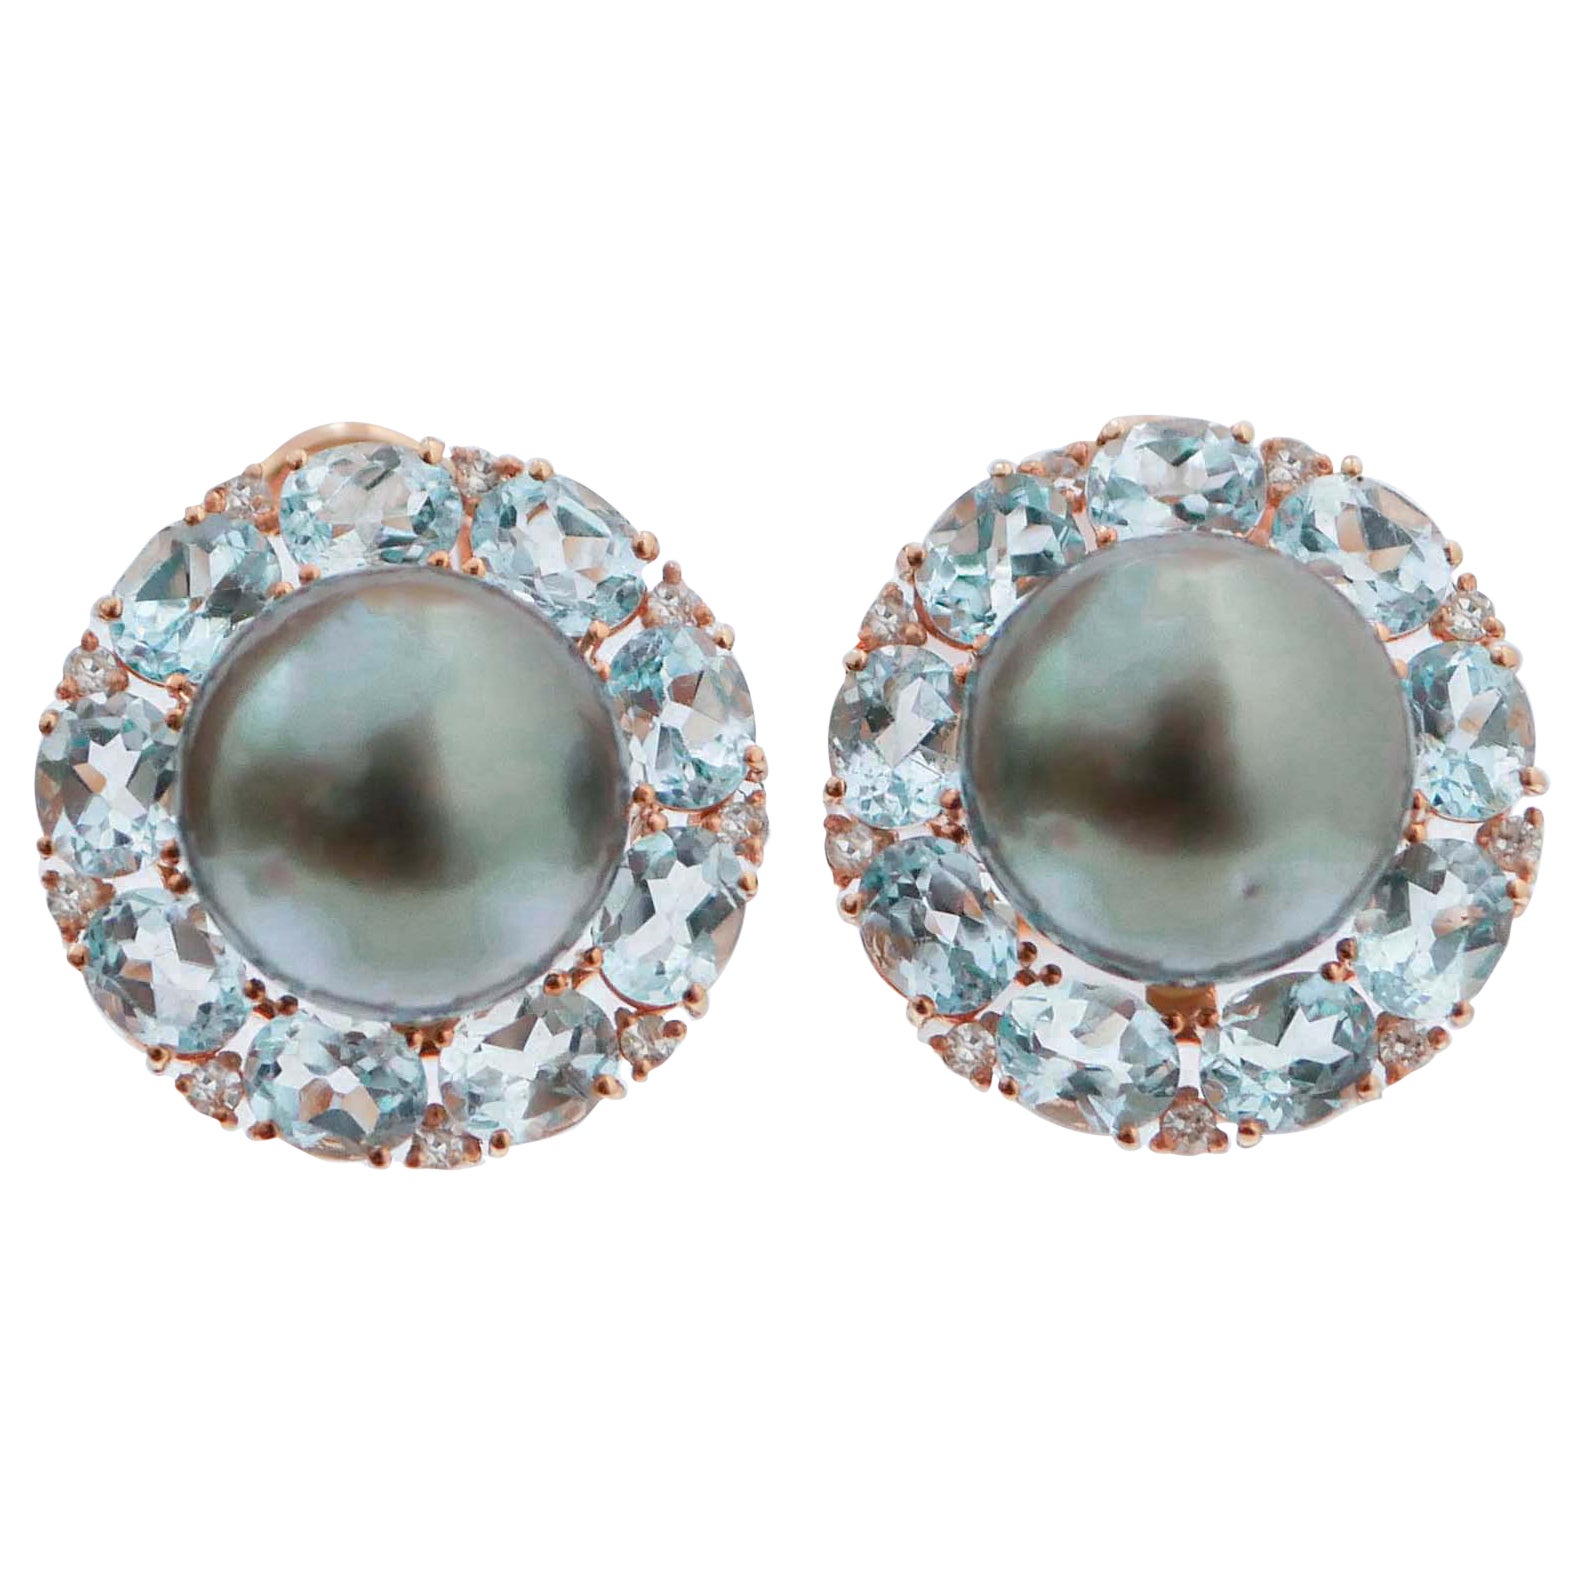 Ohrringe aus 14 Karat Roségold mit grauen Perlen, Topas und Diamanten.